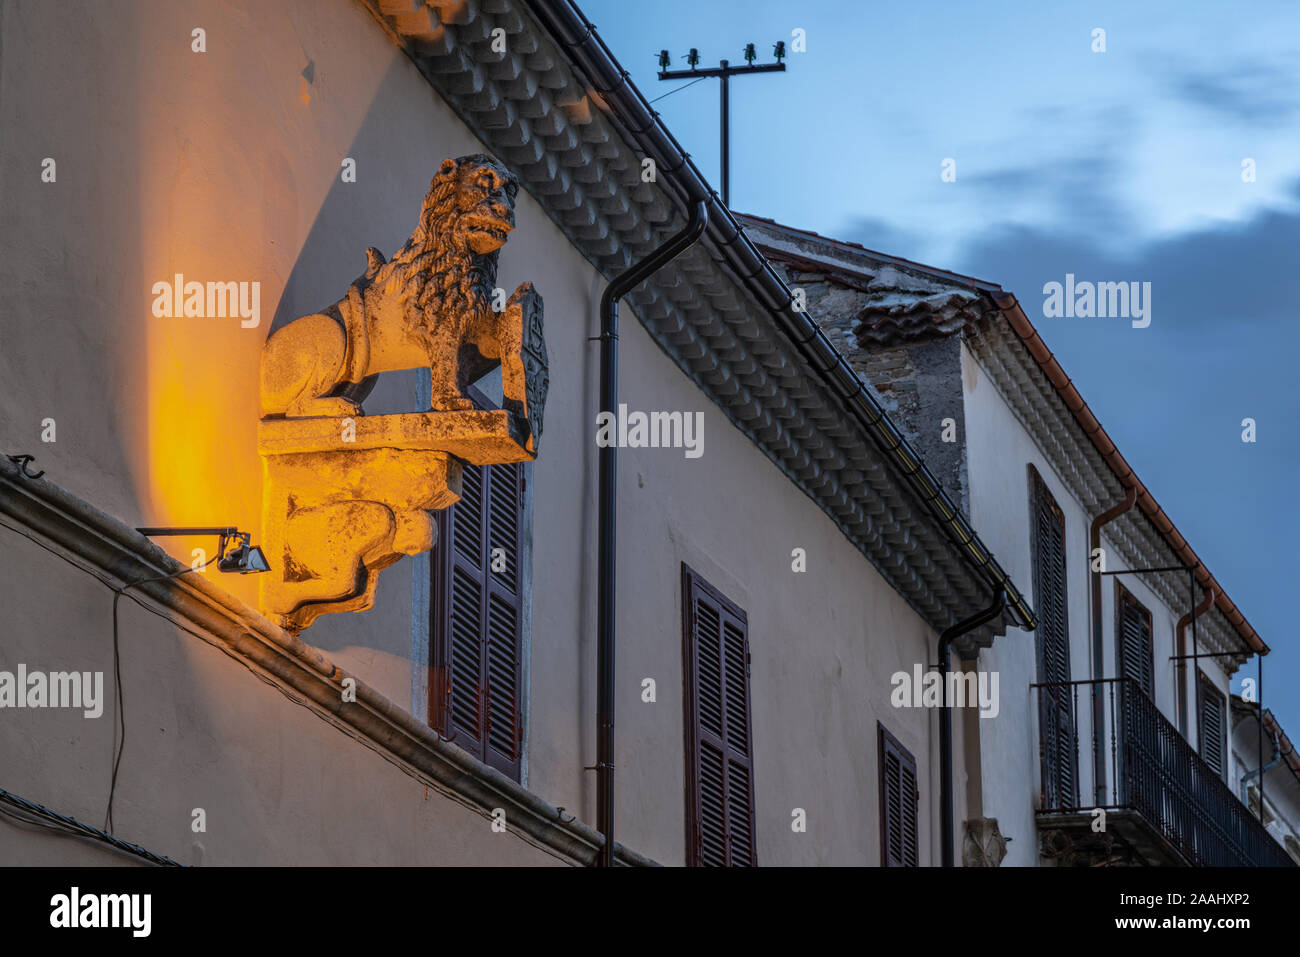 Leone veneziano, leone di pietra con lo stemma sulla facciata di un edificio della città antica, Agnone Molise Foto Stock